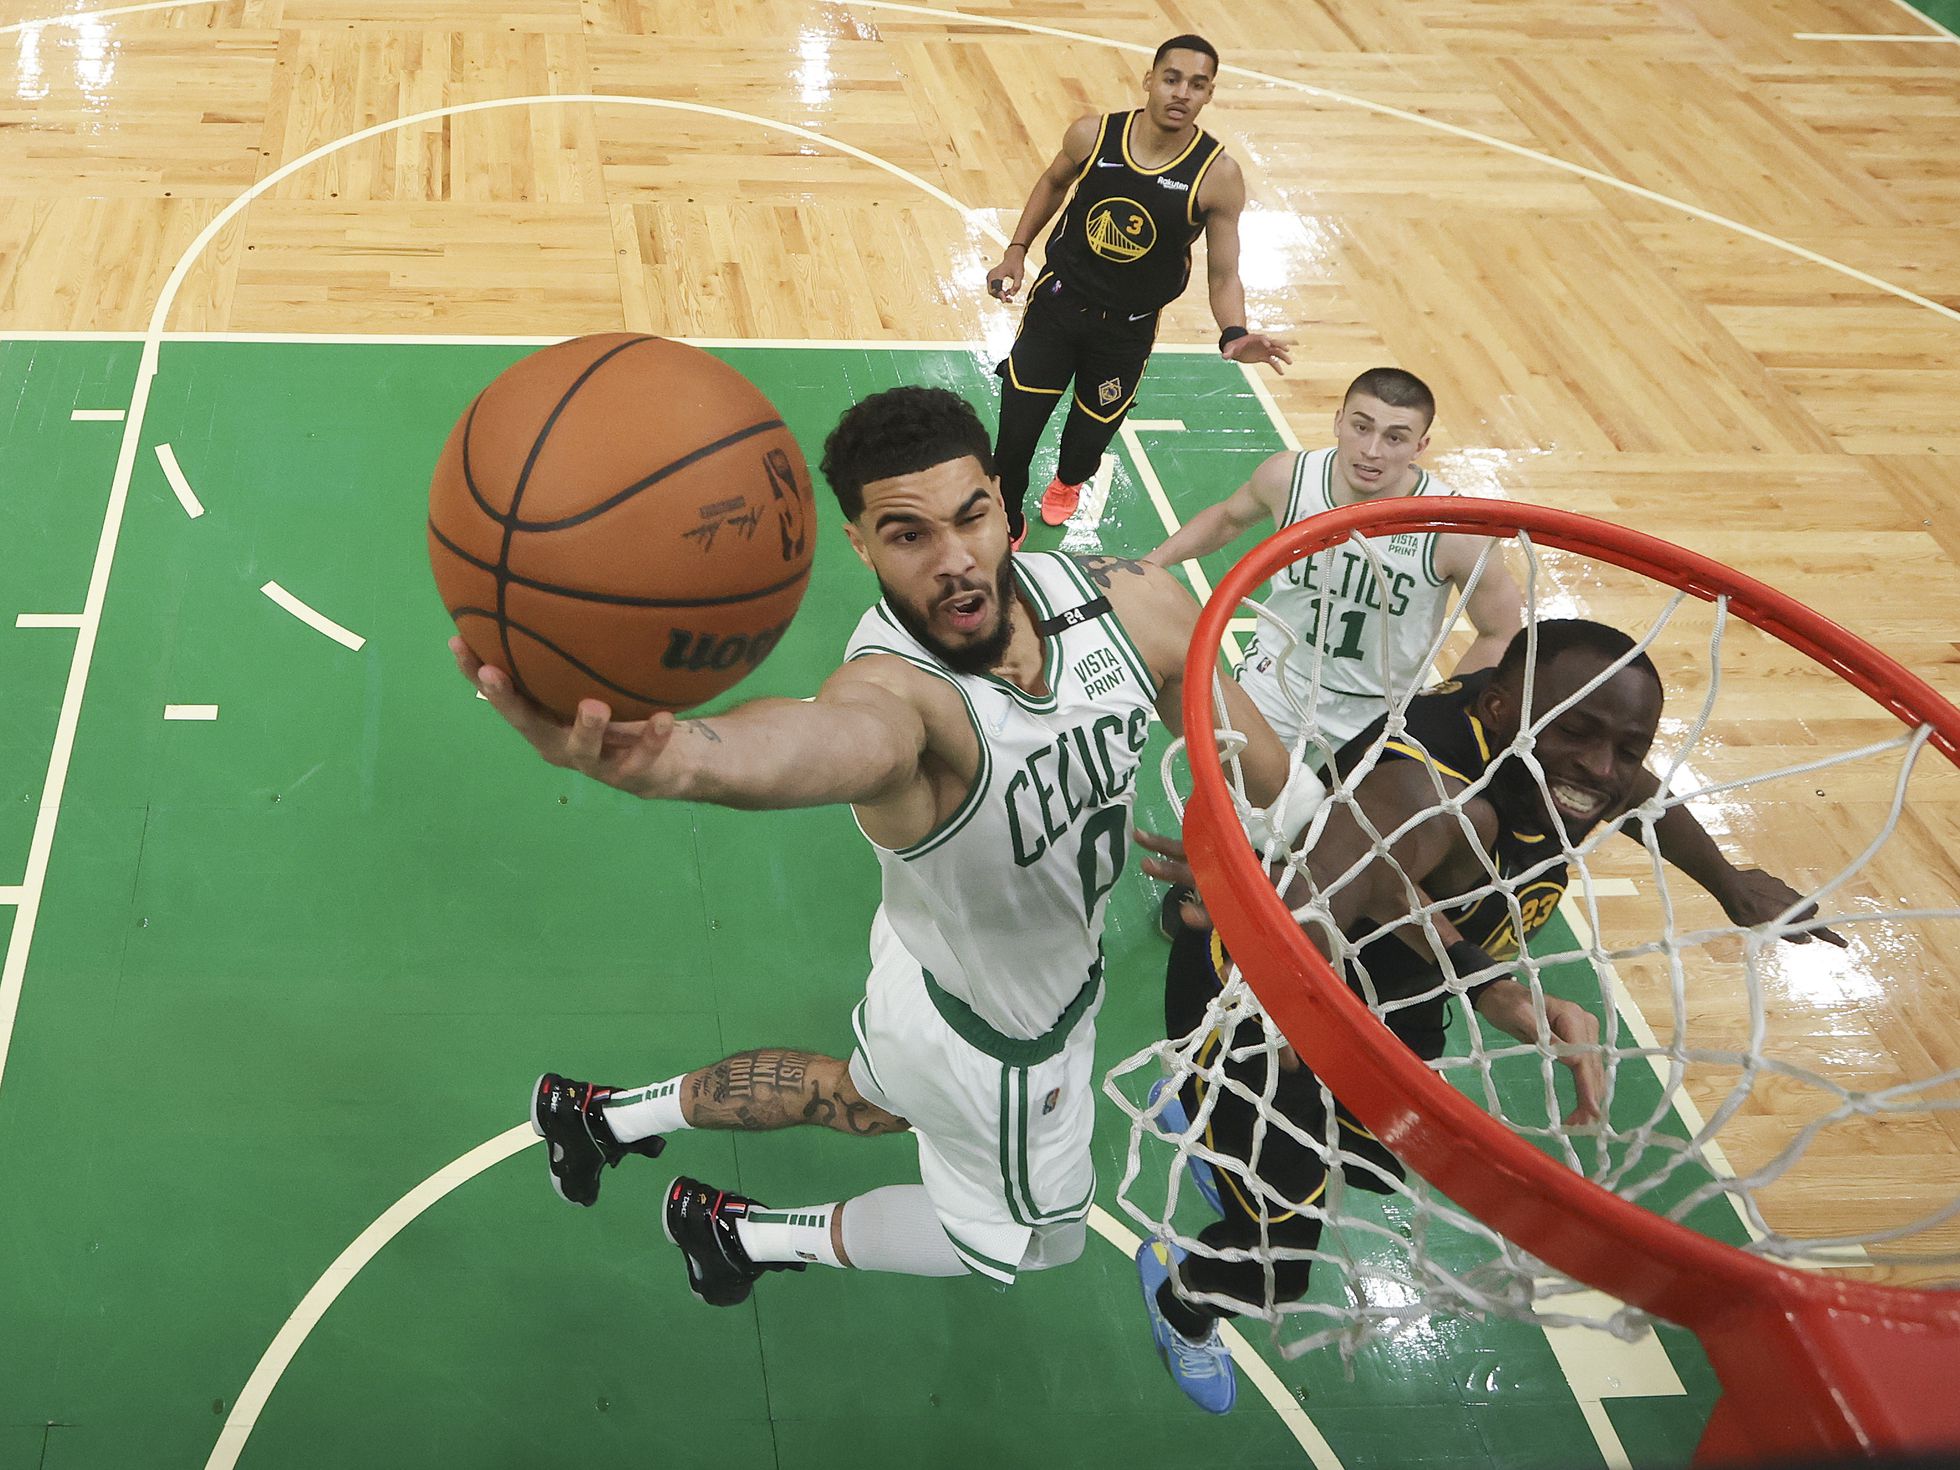 Finales NBA 2022 entre Warriors y Celtics: calendario de partidos y  resultados | Deportes | EL PAÍS